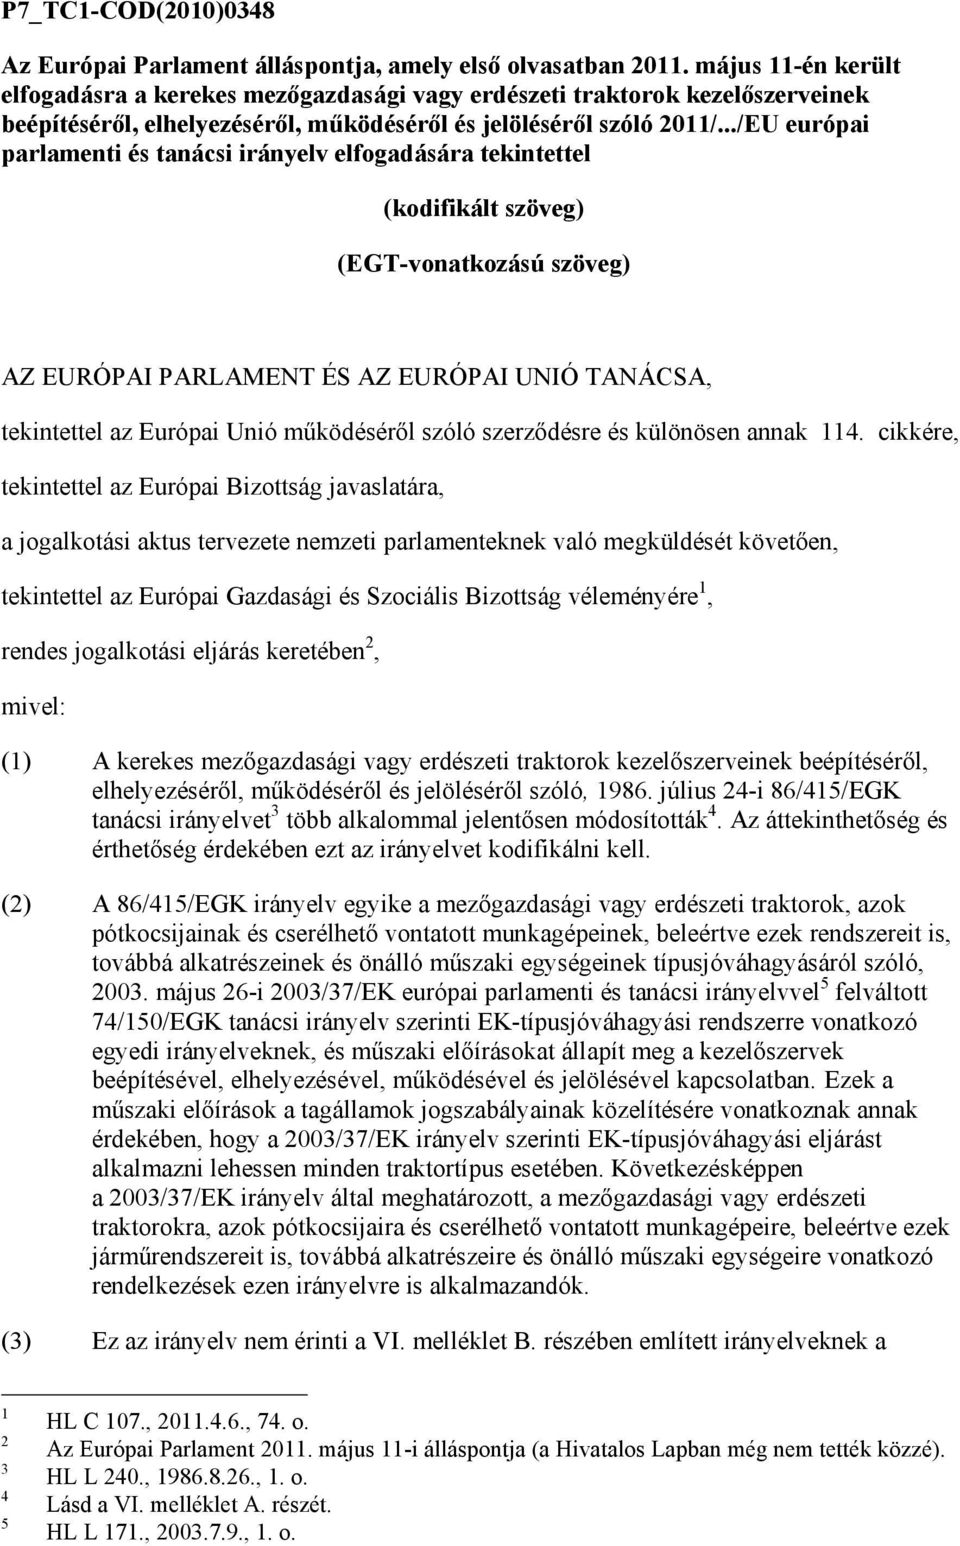 ../EU európai parlamenti és tanácsi irányelv elfogadására tekintettel (kodifikált szöveg) (EGT-vonatkozású szöveg) AZ EURÓPAI PARLAMENT ÉS AZ EURÓPAI UNIÓ TANÁCSA, tekintettel az Európai Unió